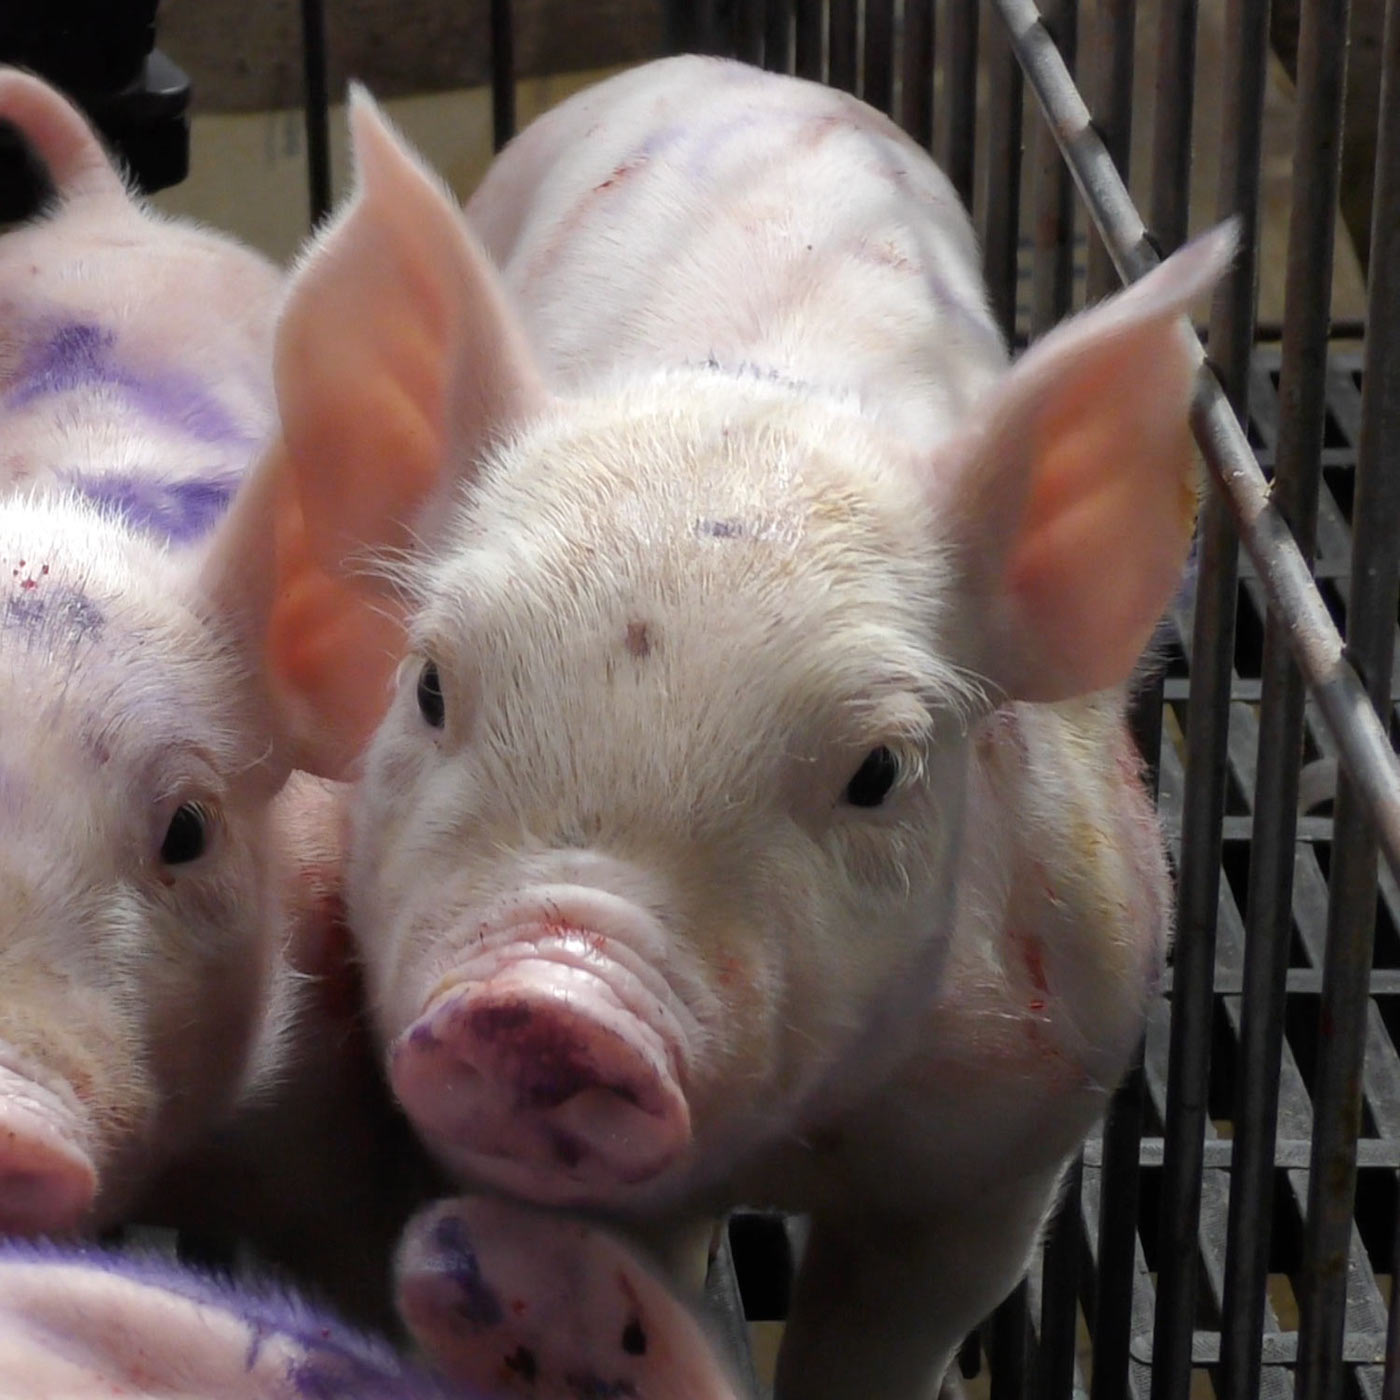 Granjas de cerdos: Crueldad desde el primer día